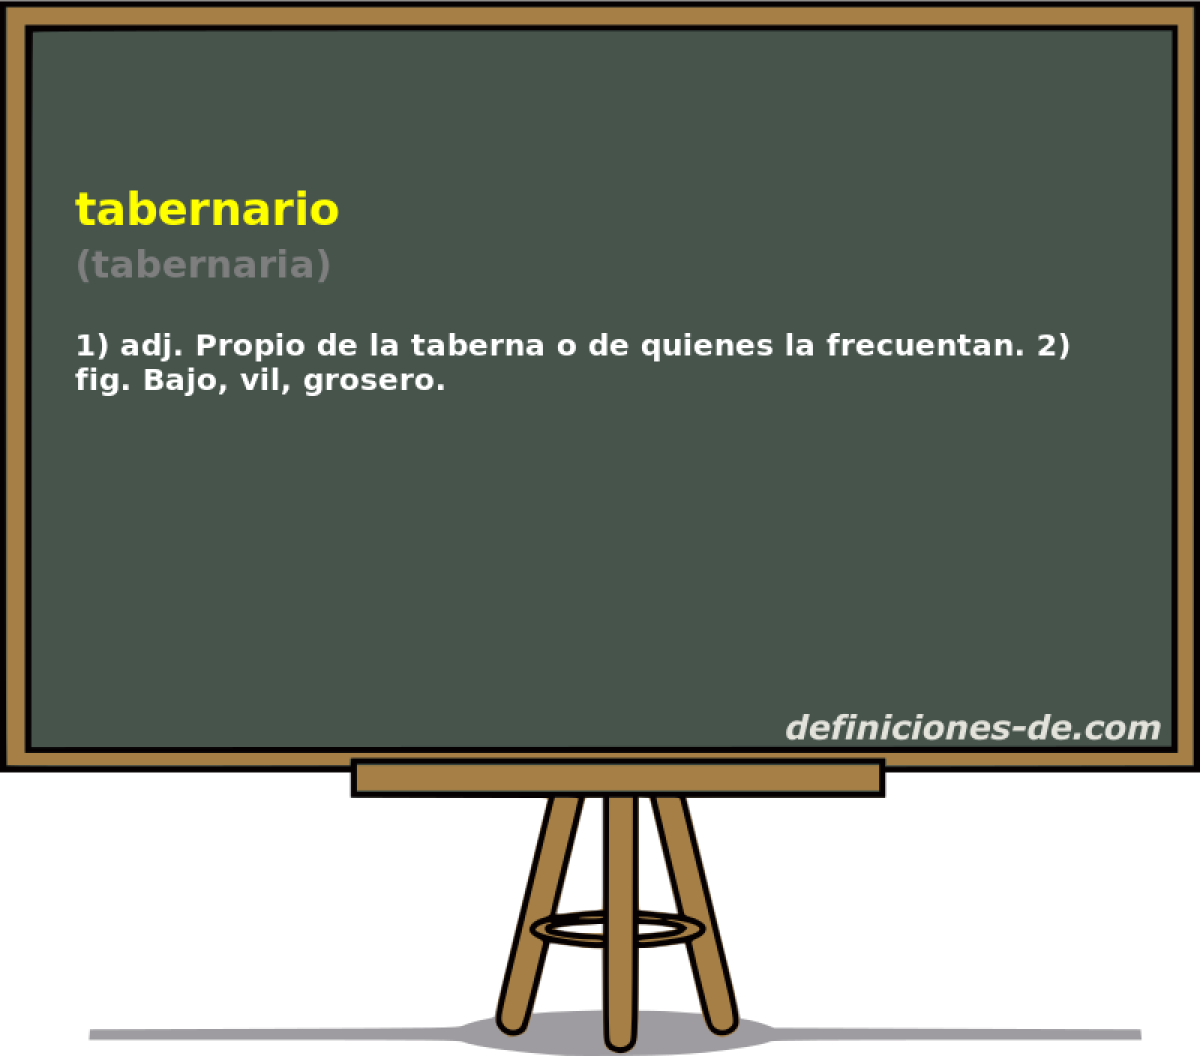 tabernario (tabernaria)